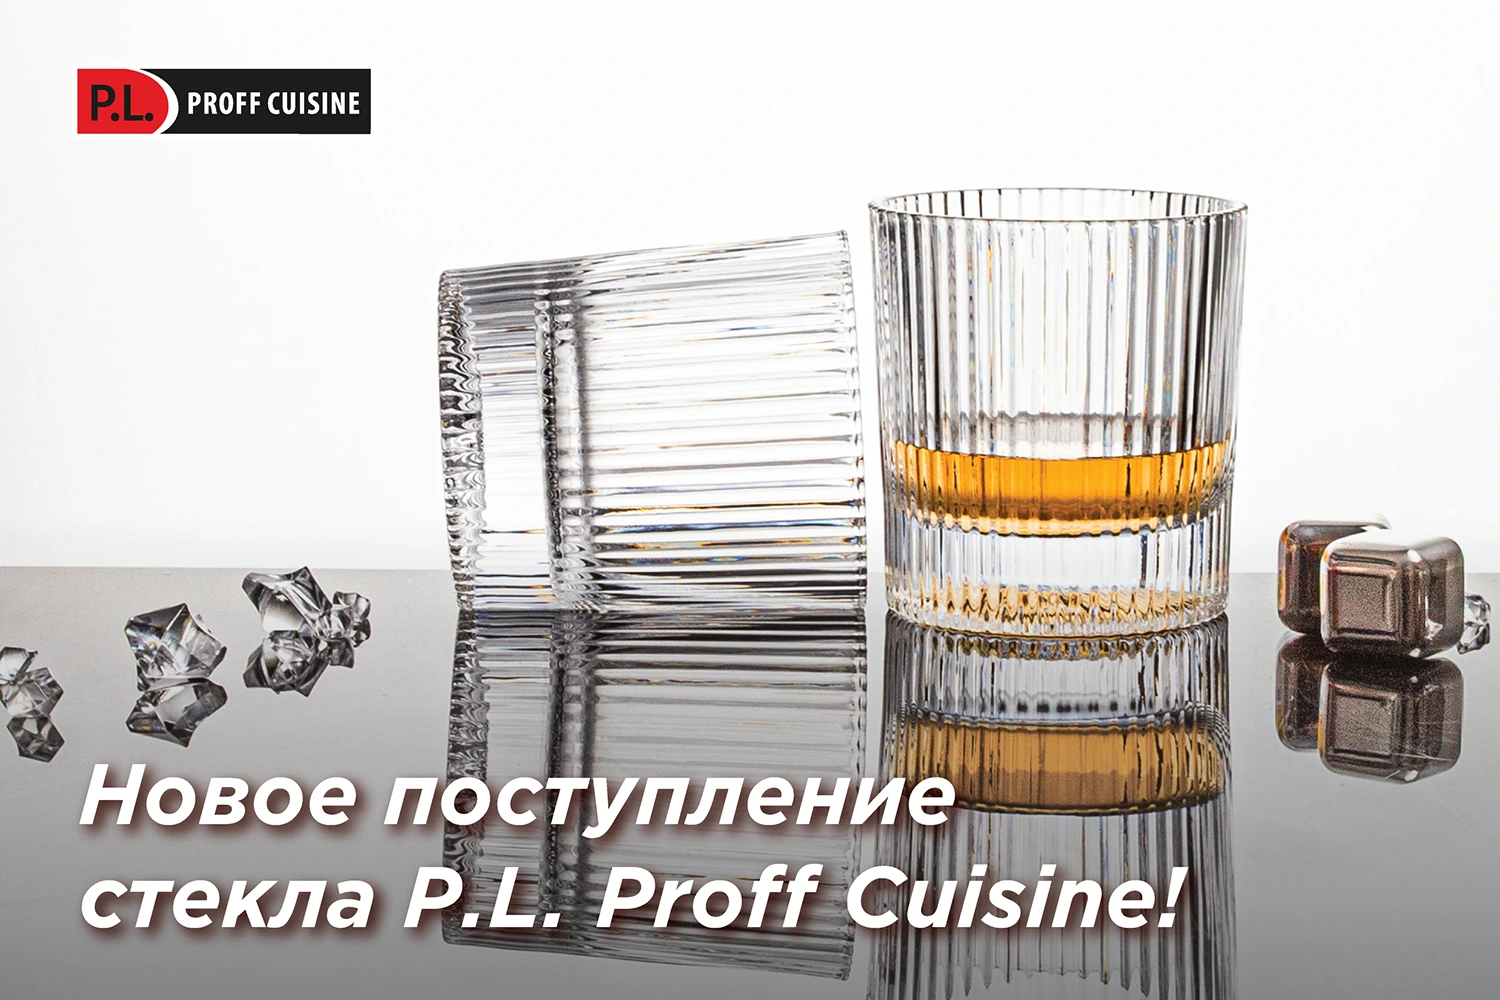 Новое поступление стеклянной посуды от P.L. Proff Cuisine